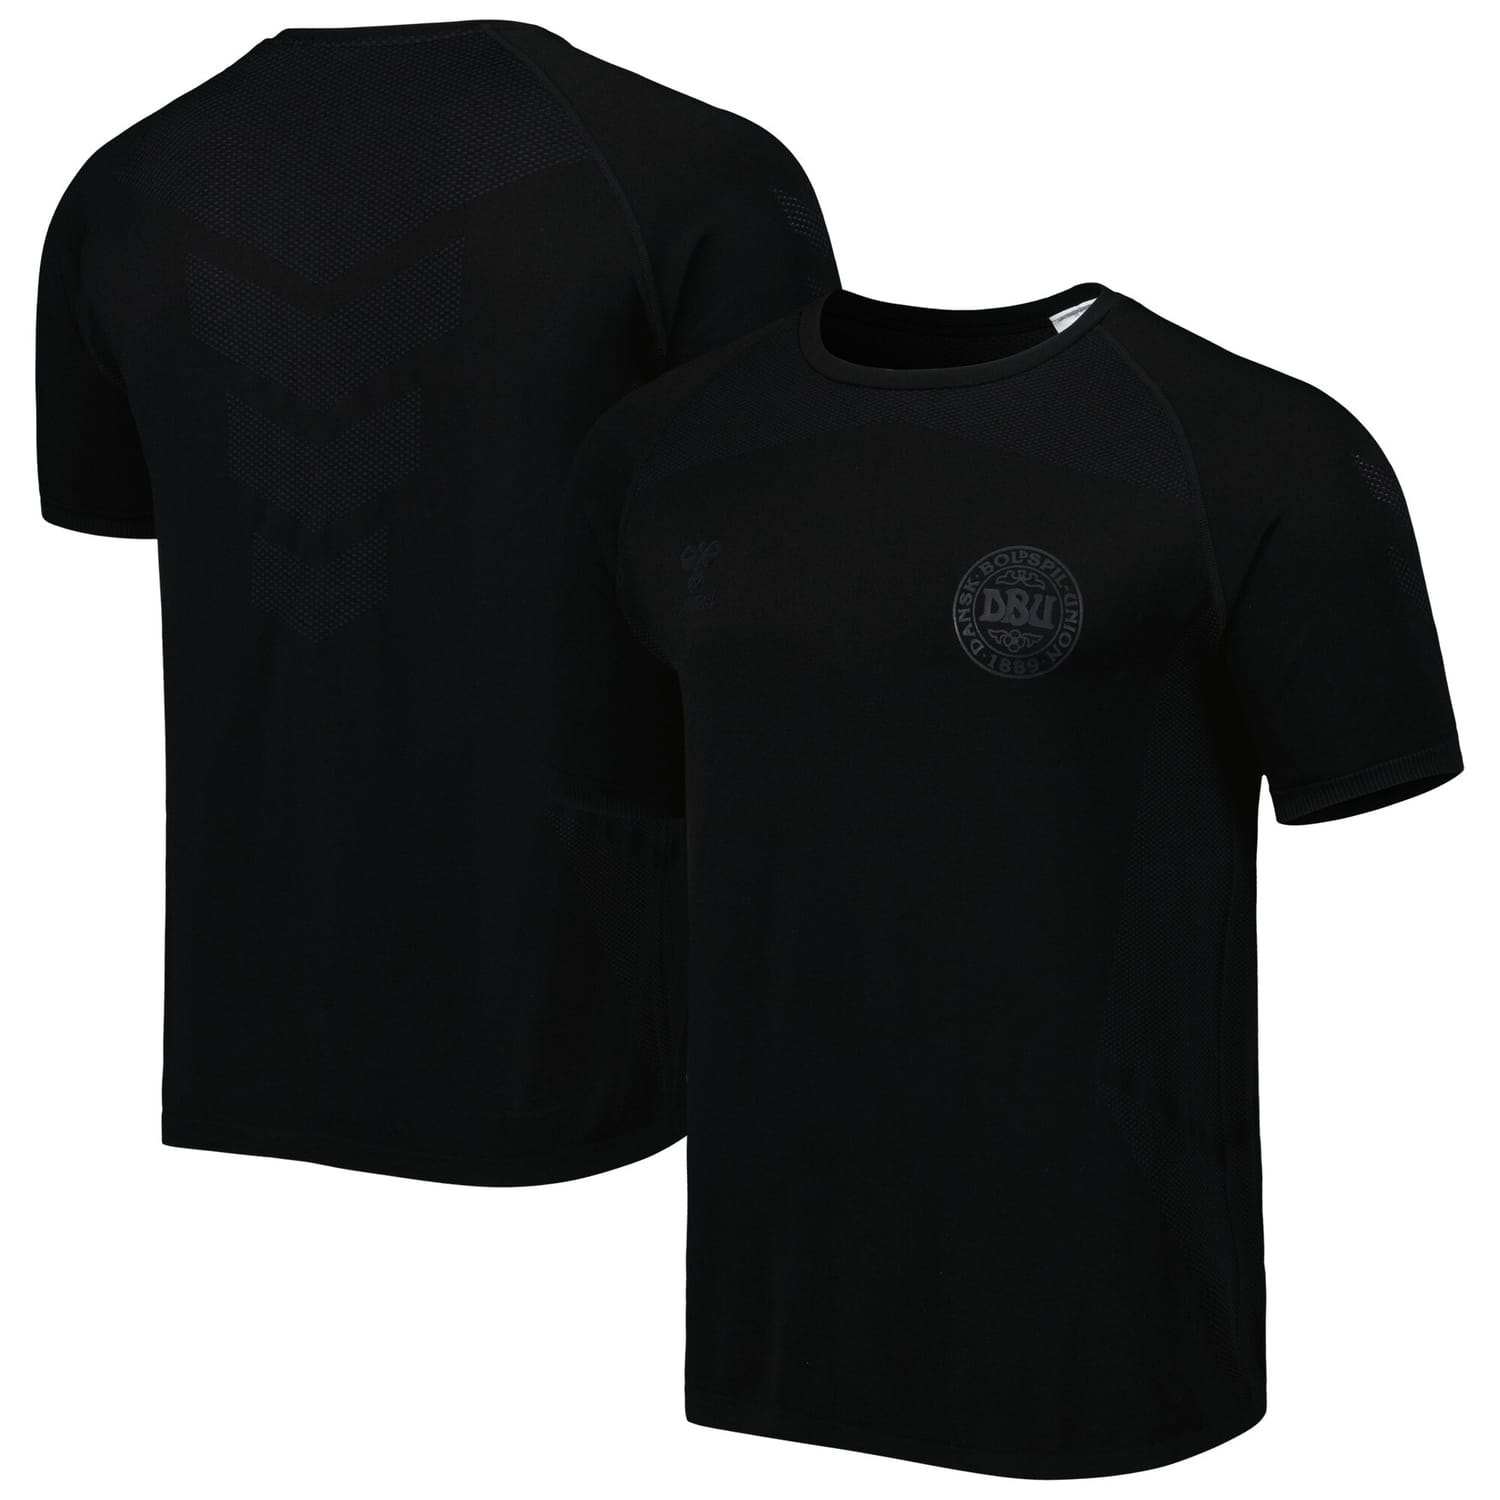 Denmark National Team Training Pro Jersey Shirt Black for Men